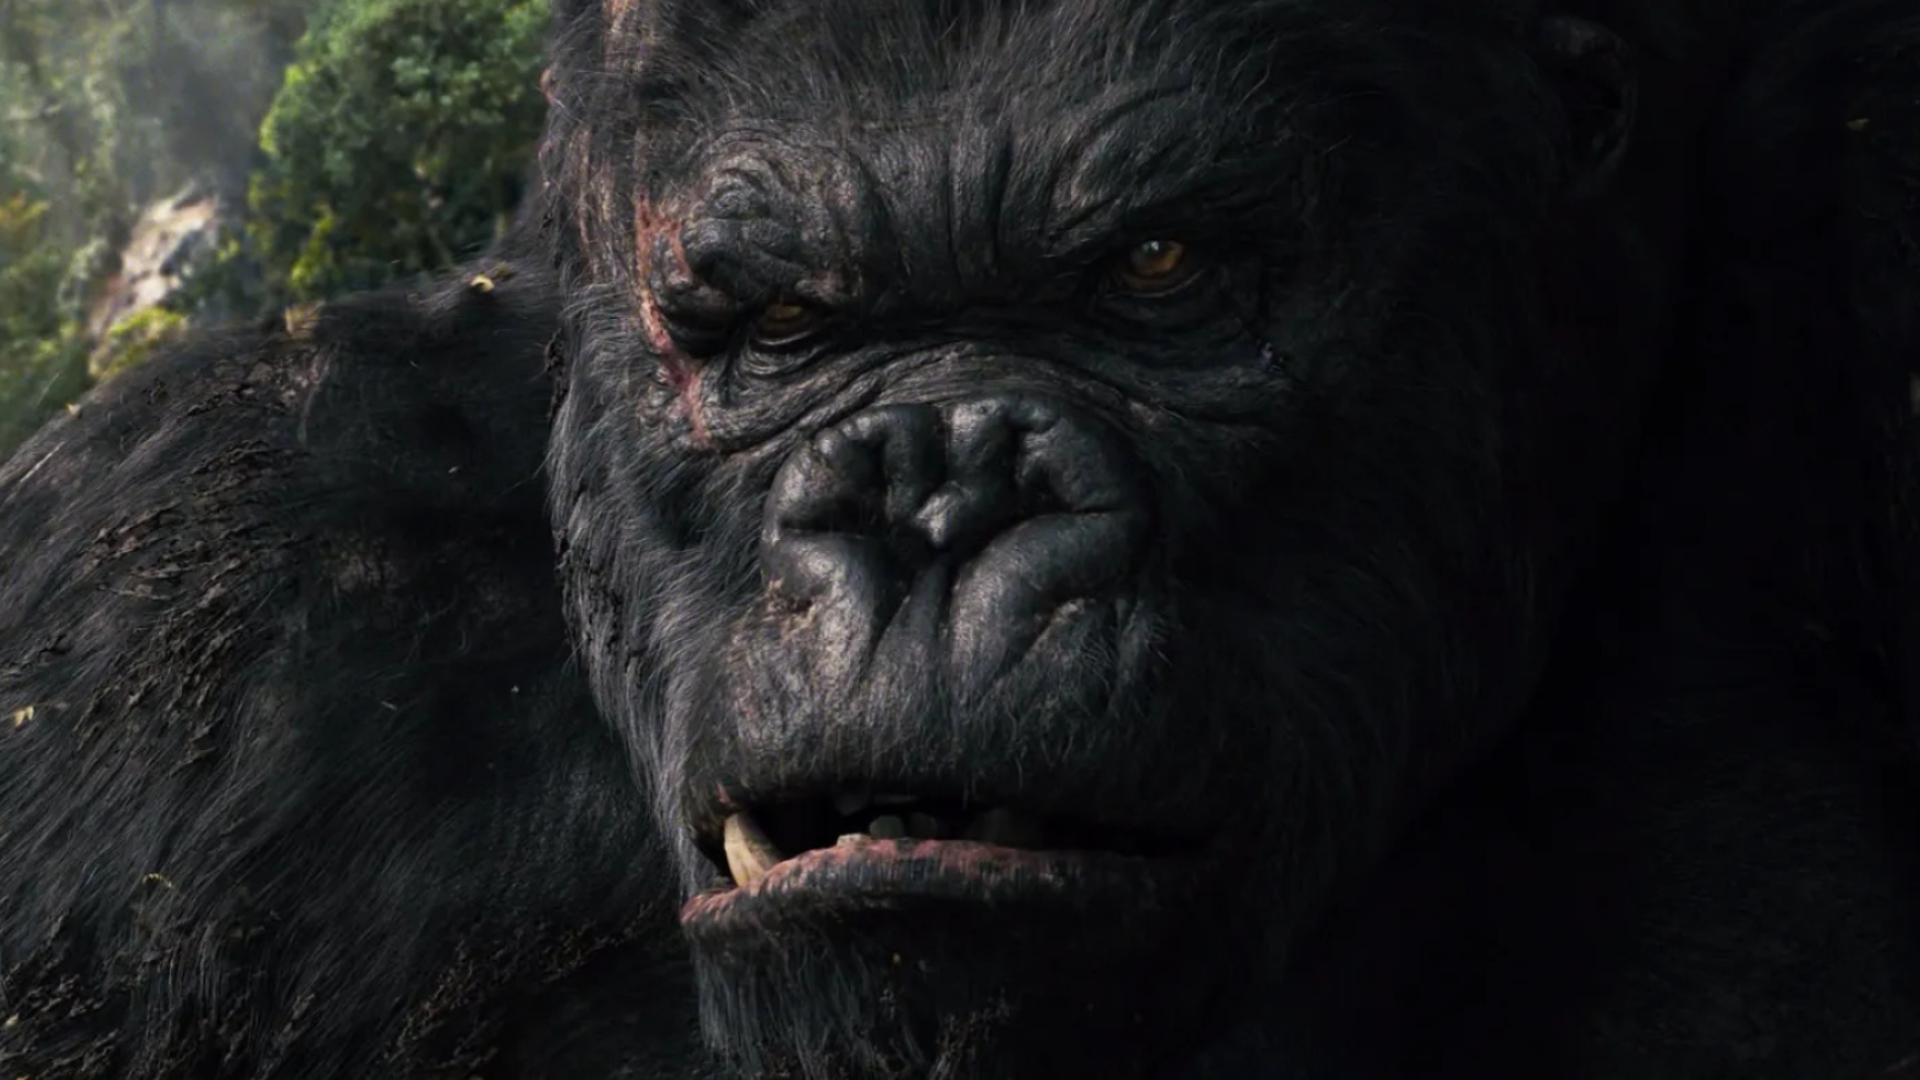 King Kong: Carl Denham's Giant Monster, 2005 movie, Directed by Peter Jackson. 1920x1080 Full HD Wallpaper.